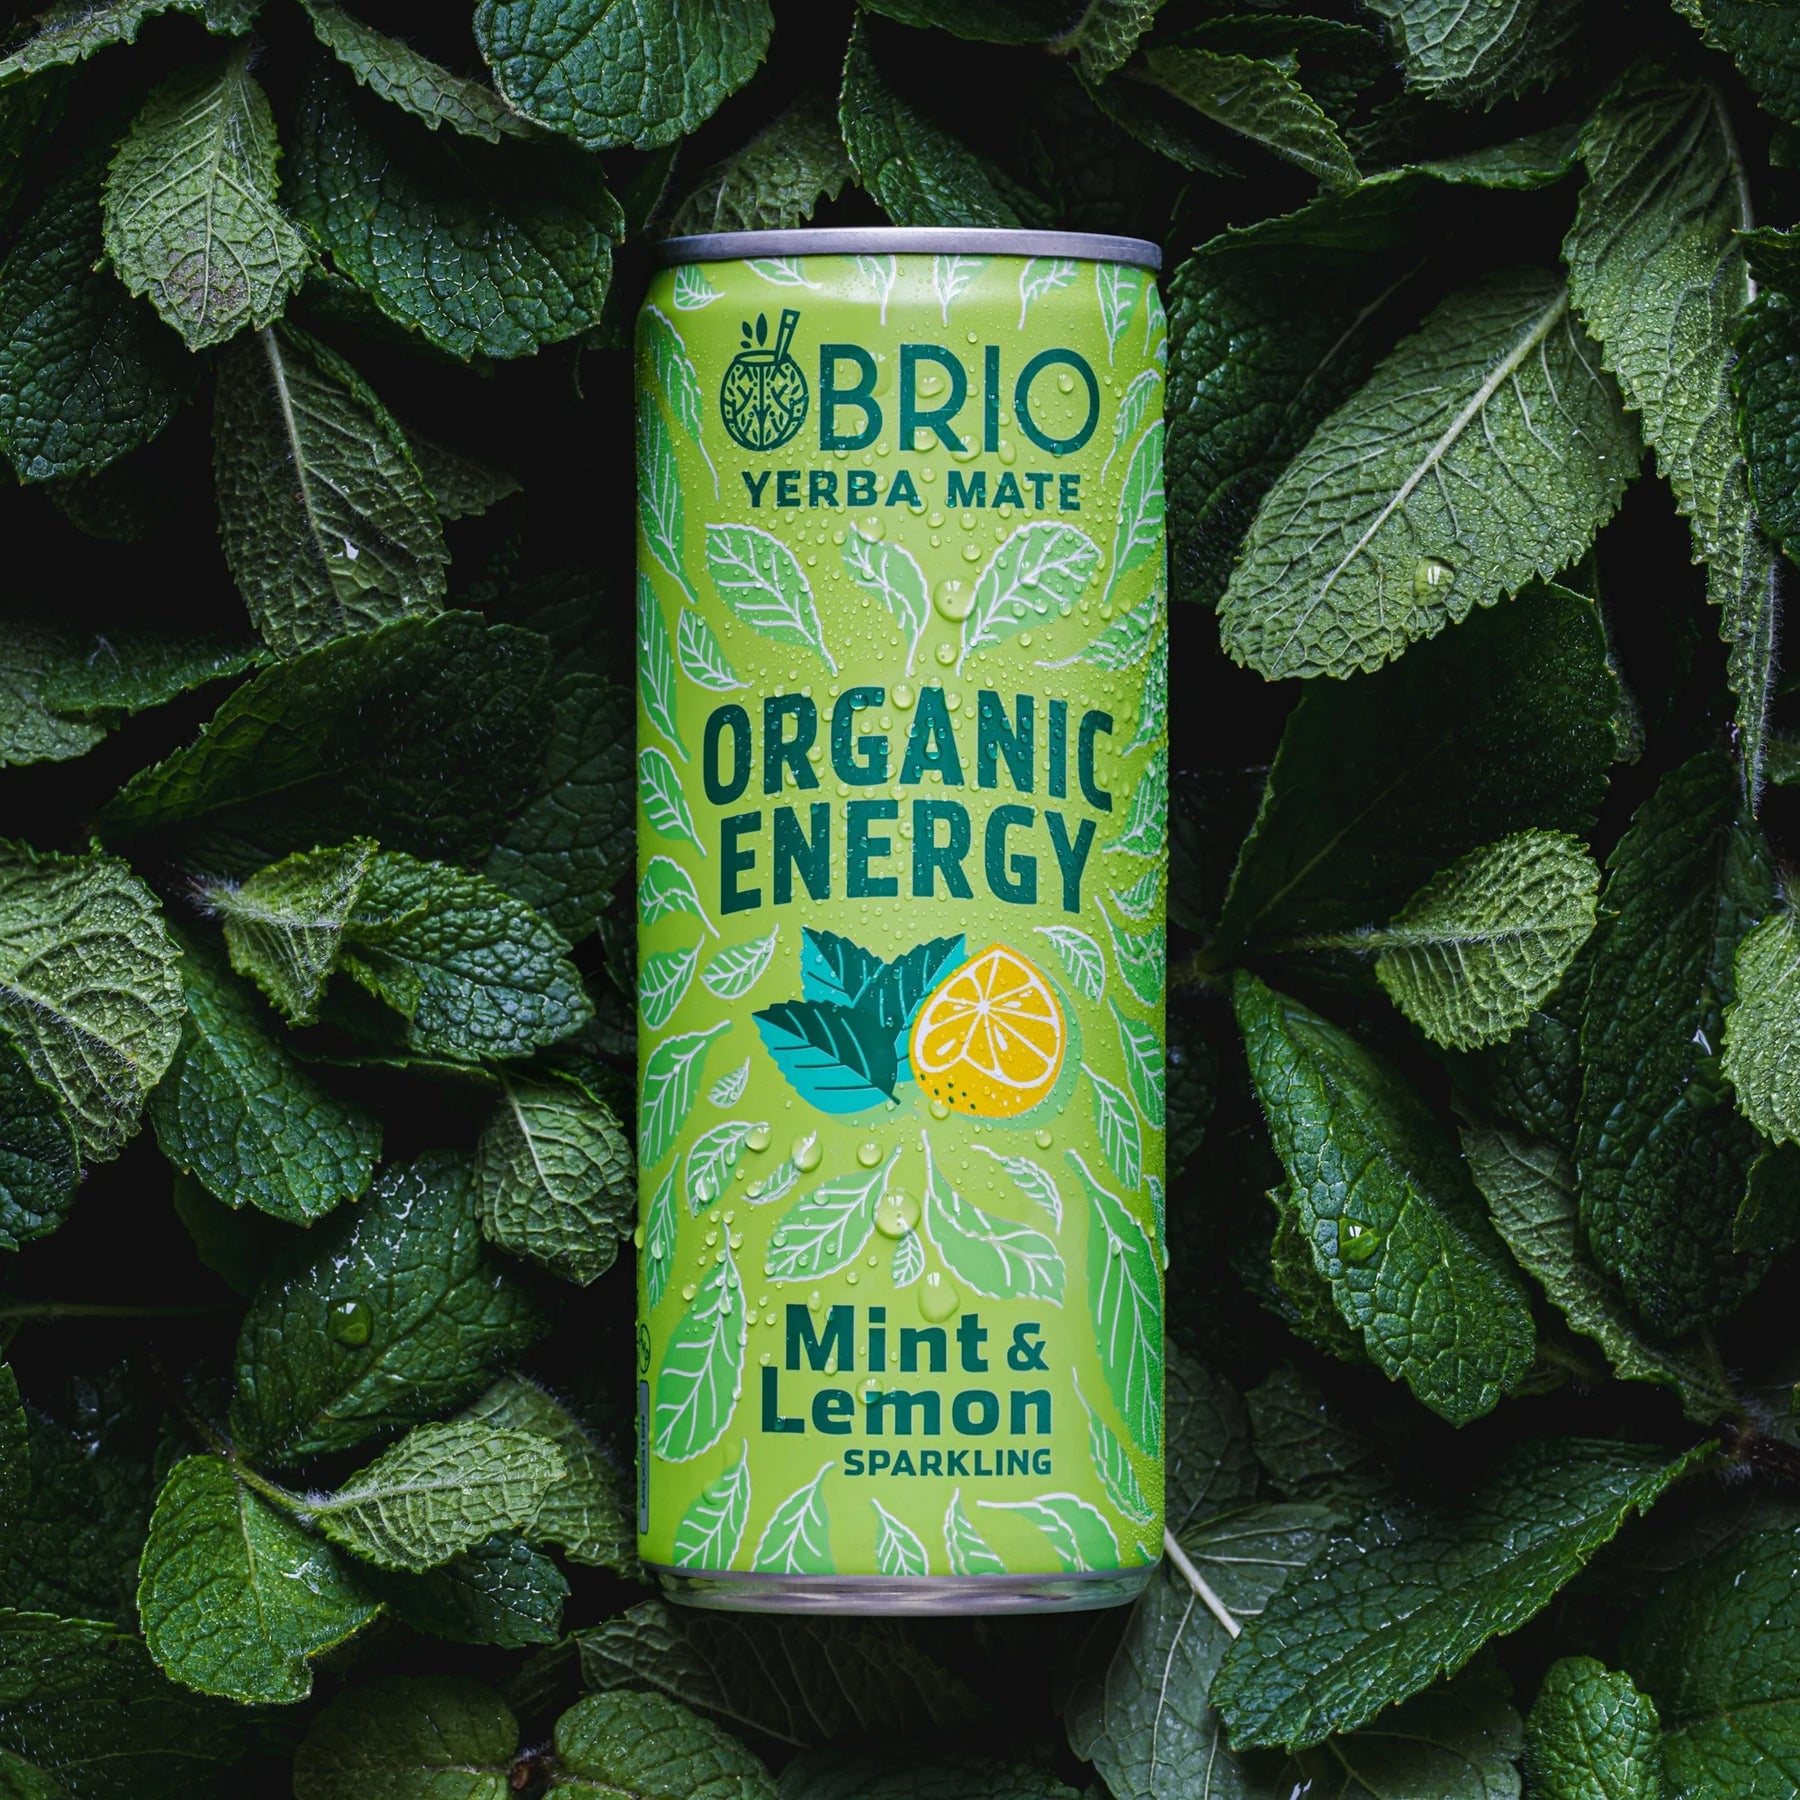 BRIO YERBA MATE - Organic Energy